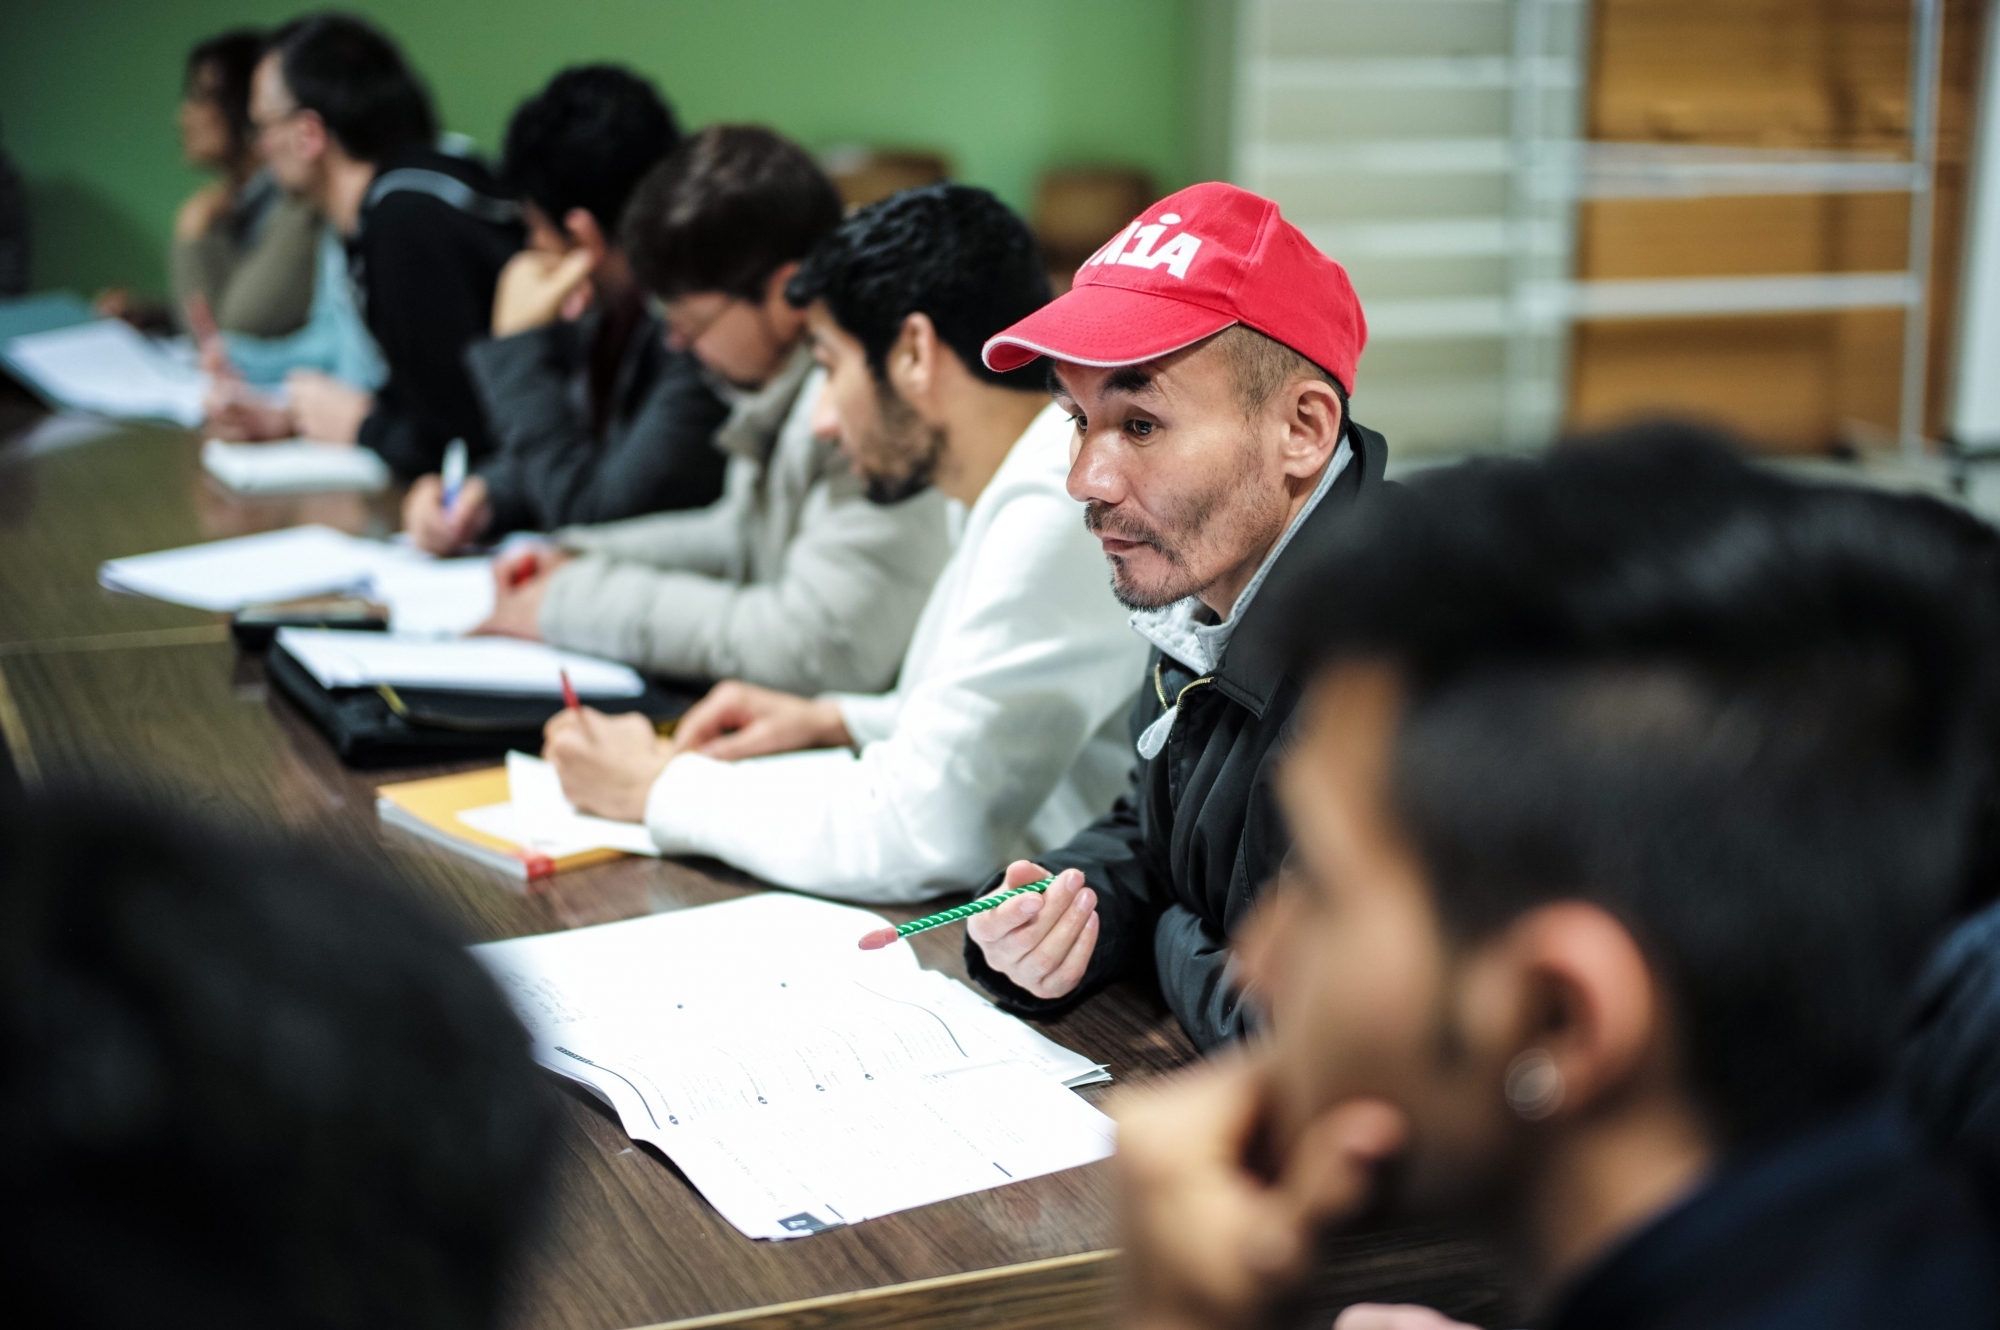 La CICM remet chaque année le prix "Salut l'étranger", comme ici en décembre 2016 à l'association Papillon qui donne des cours de français à des migrants iraniens ou afghans.  Photo: Christian Galley